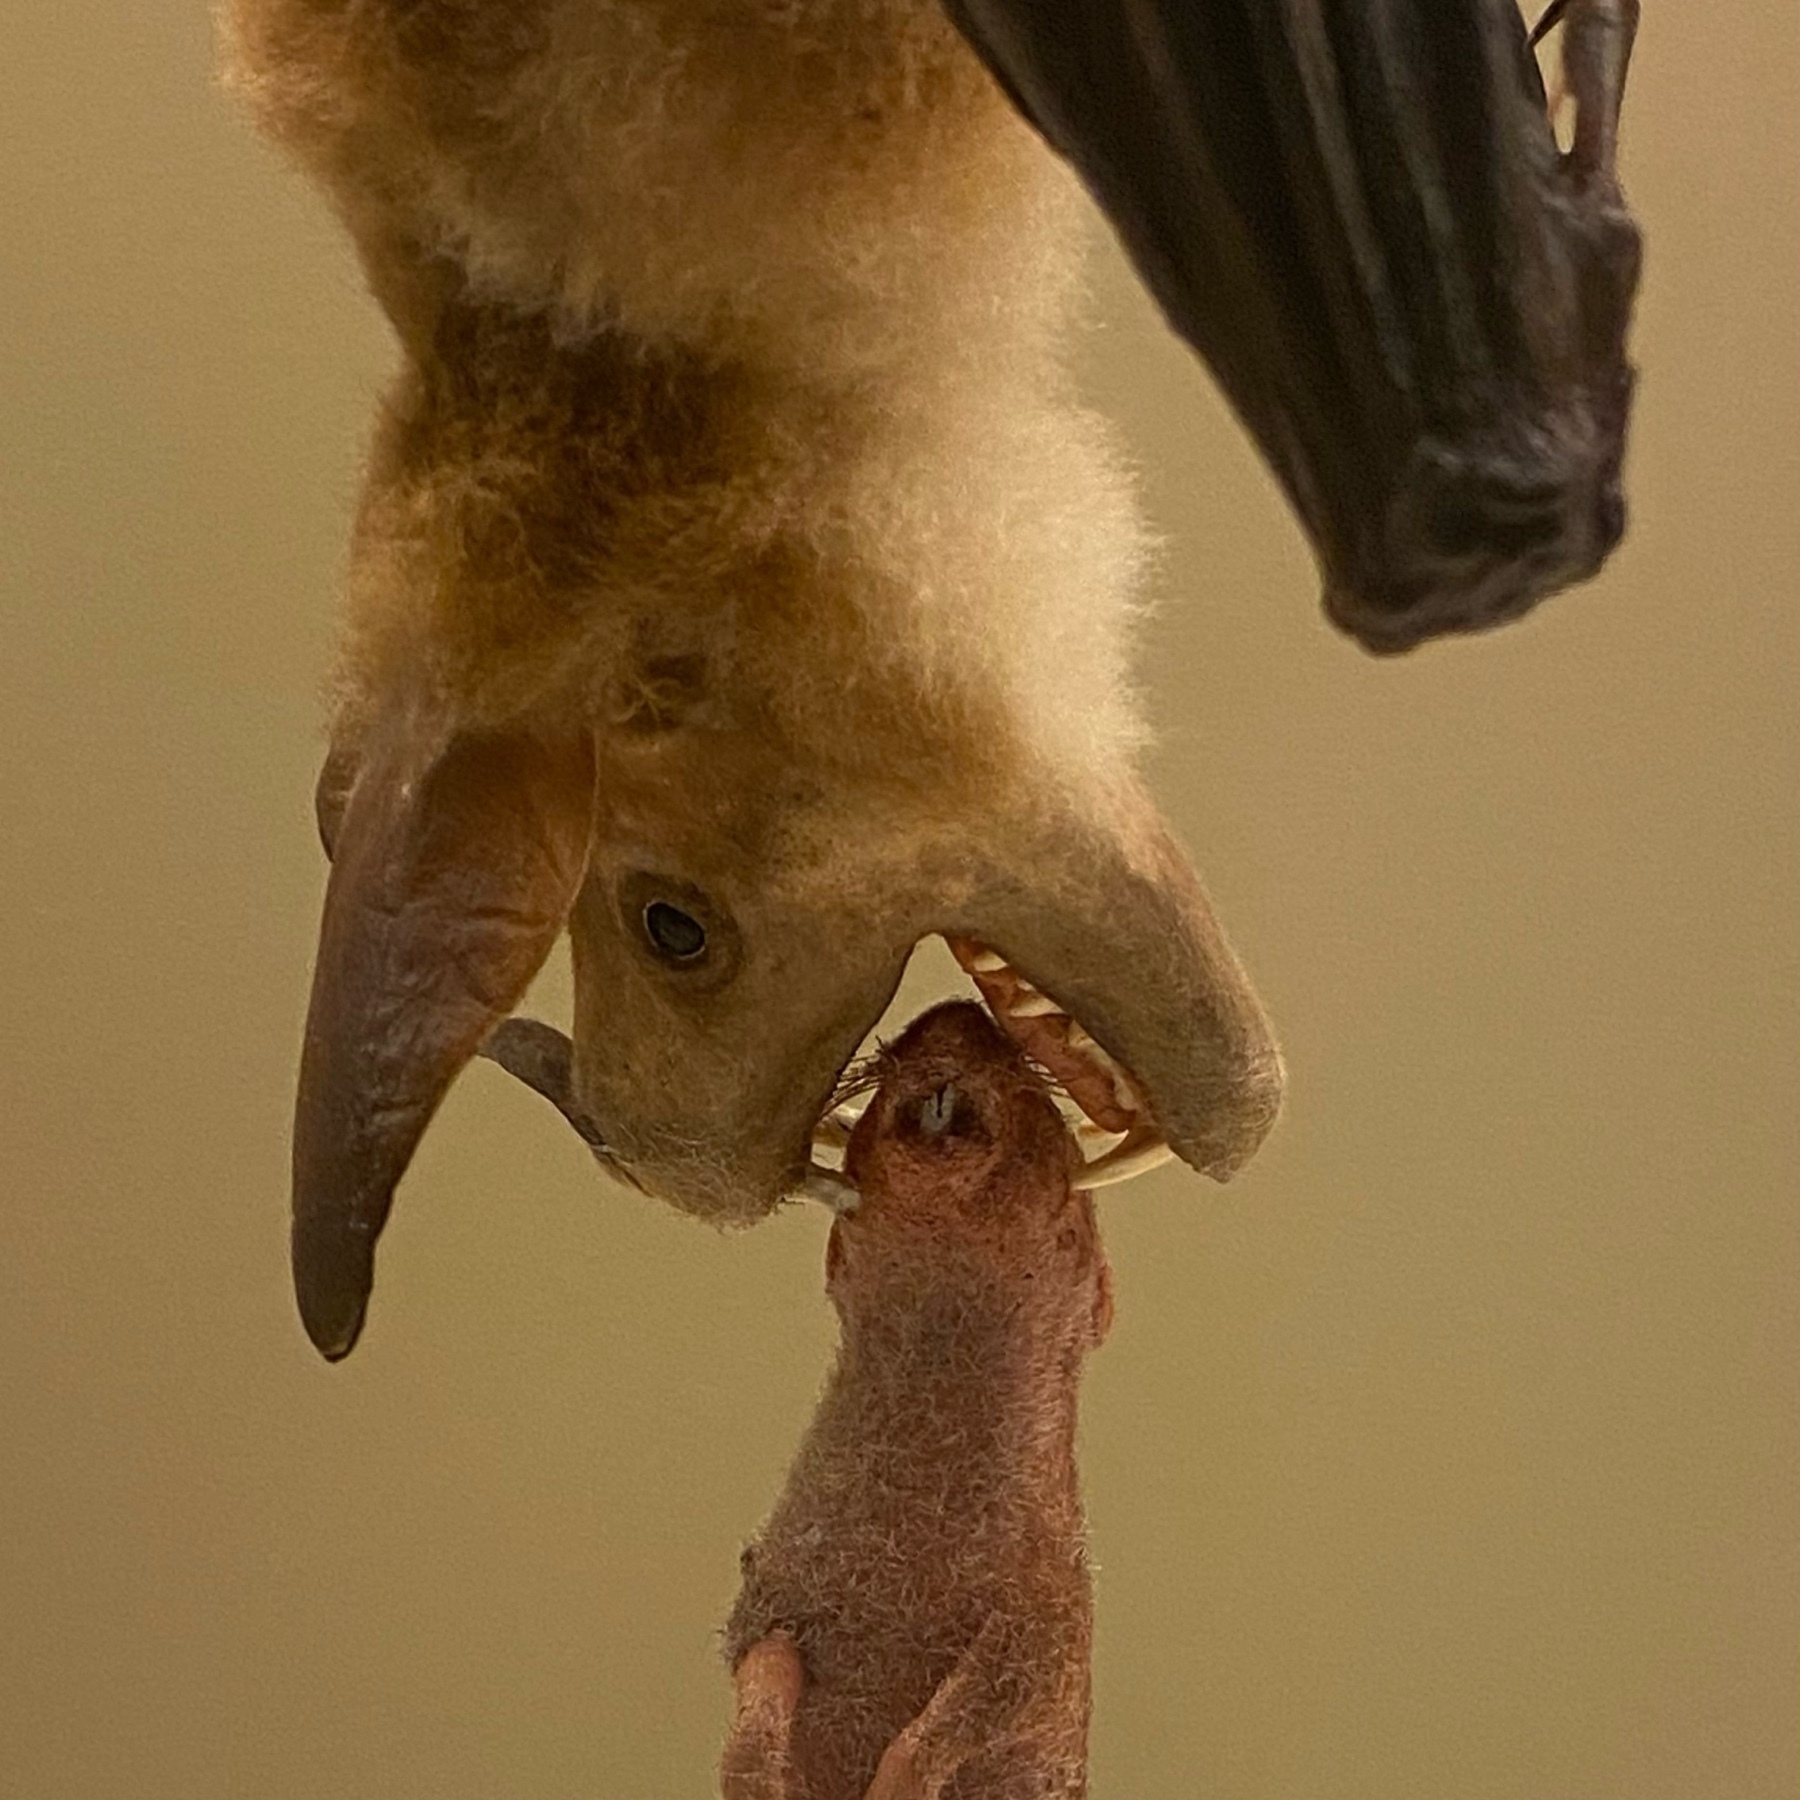 Natural History Museum bat display, with bat biting food. 